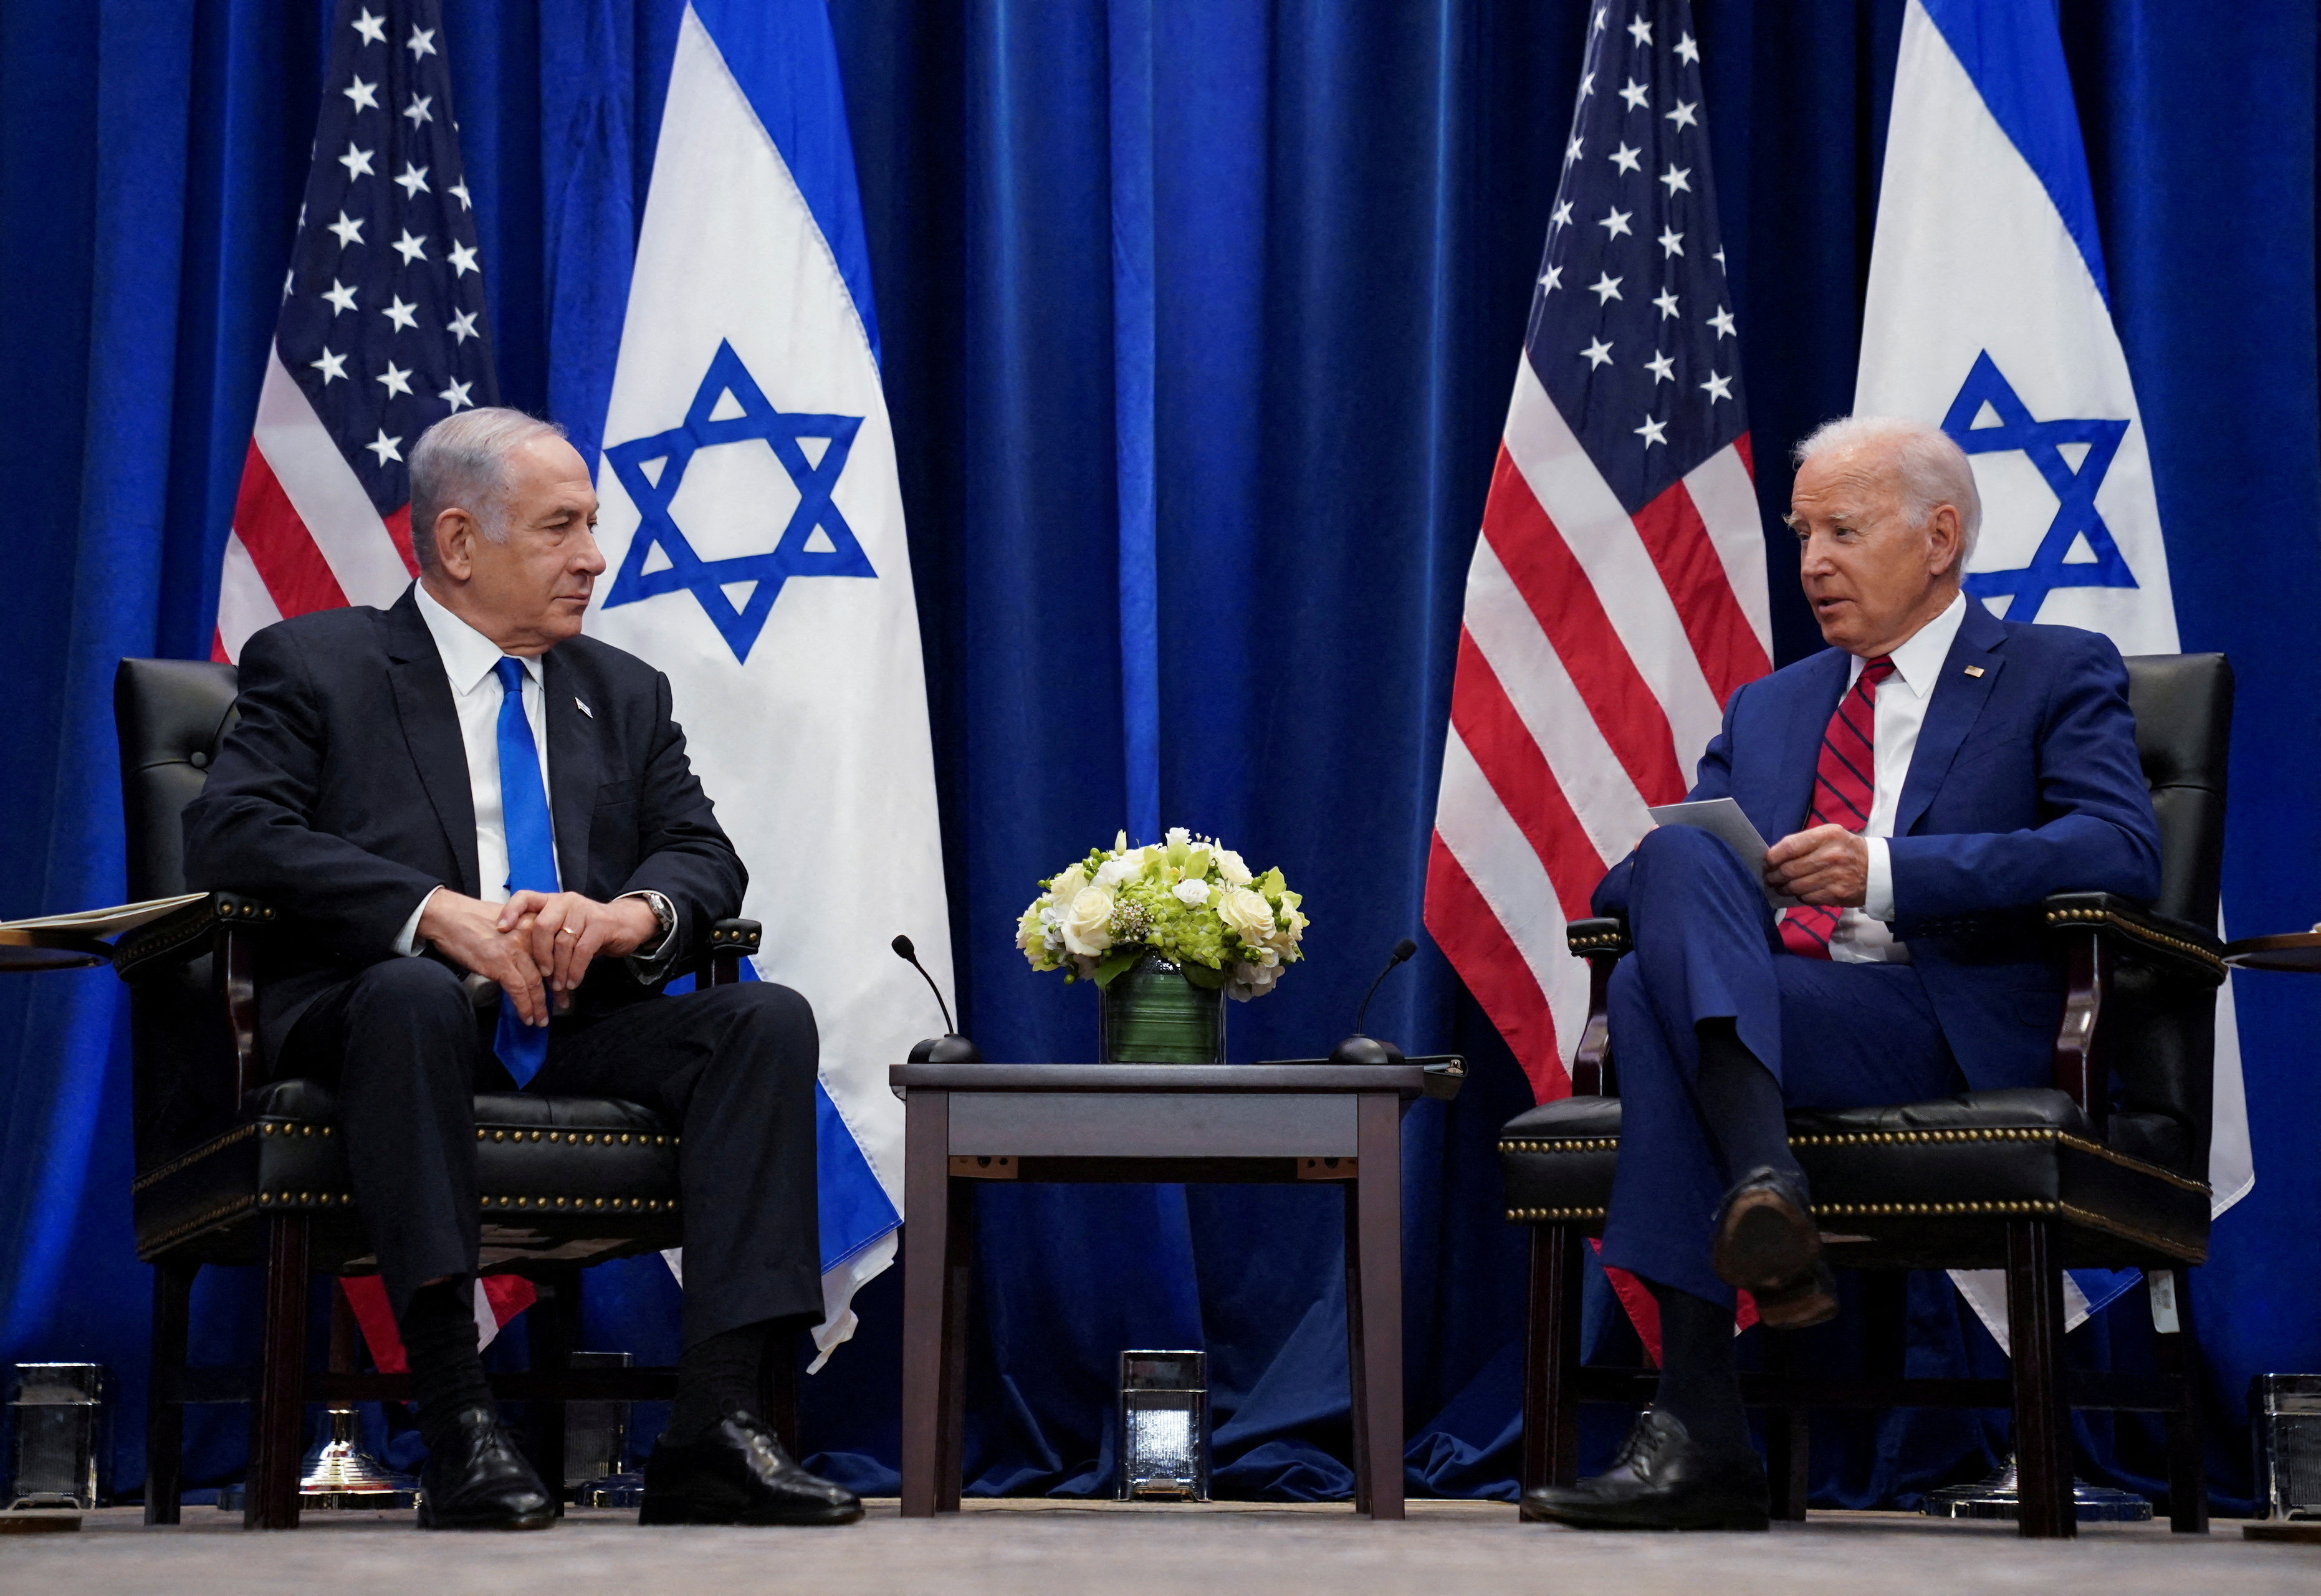 Ο πρόεδρος των ΗΠΑ Μπάιντεν συναντά τον Πρόεδρο του Ισραήλ Νετανιάχου κατά τη διάρκεια της Γενικής Συνέλευσης των Ηνωμένων Εθνών στη Νέα Υόρκη